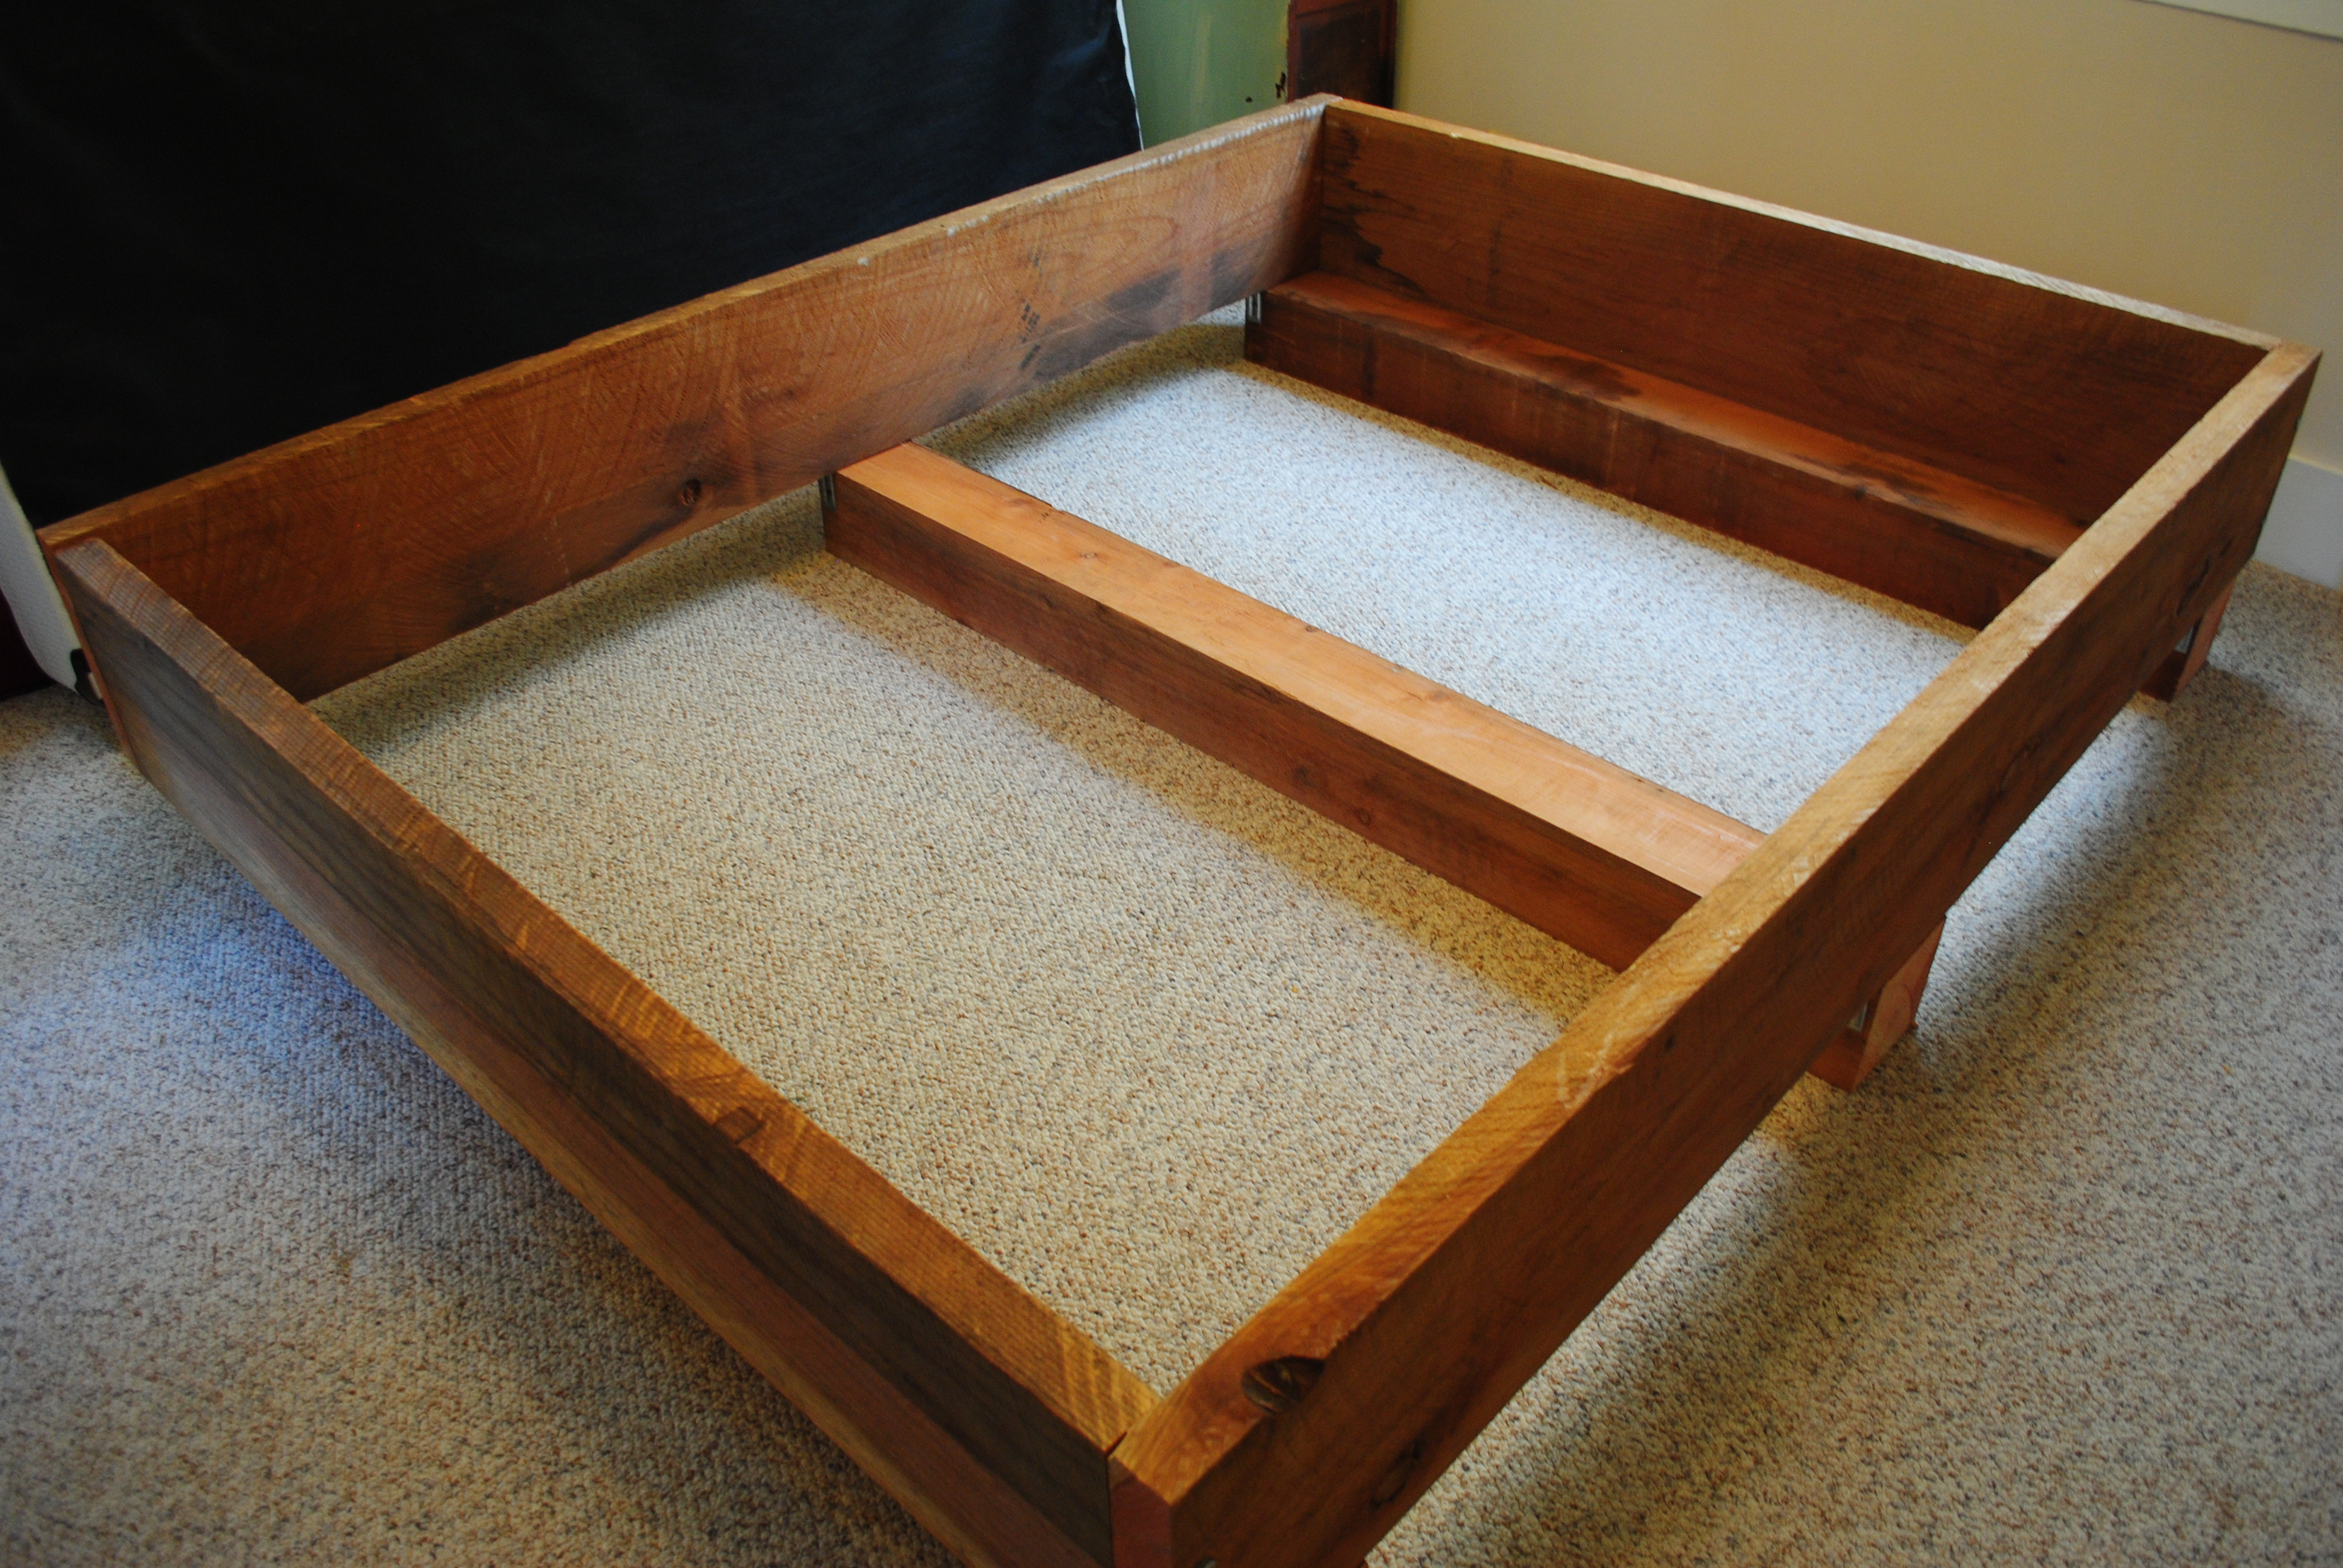 DIY Project #2: Redwood Bed Frame | Transmigration